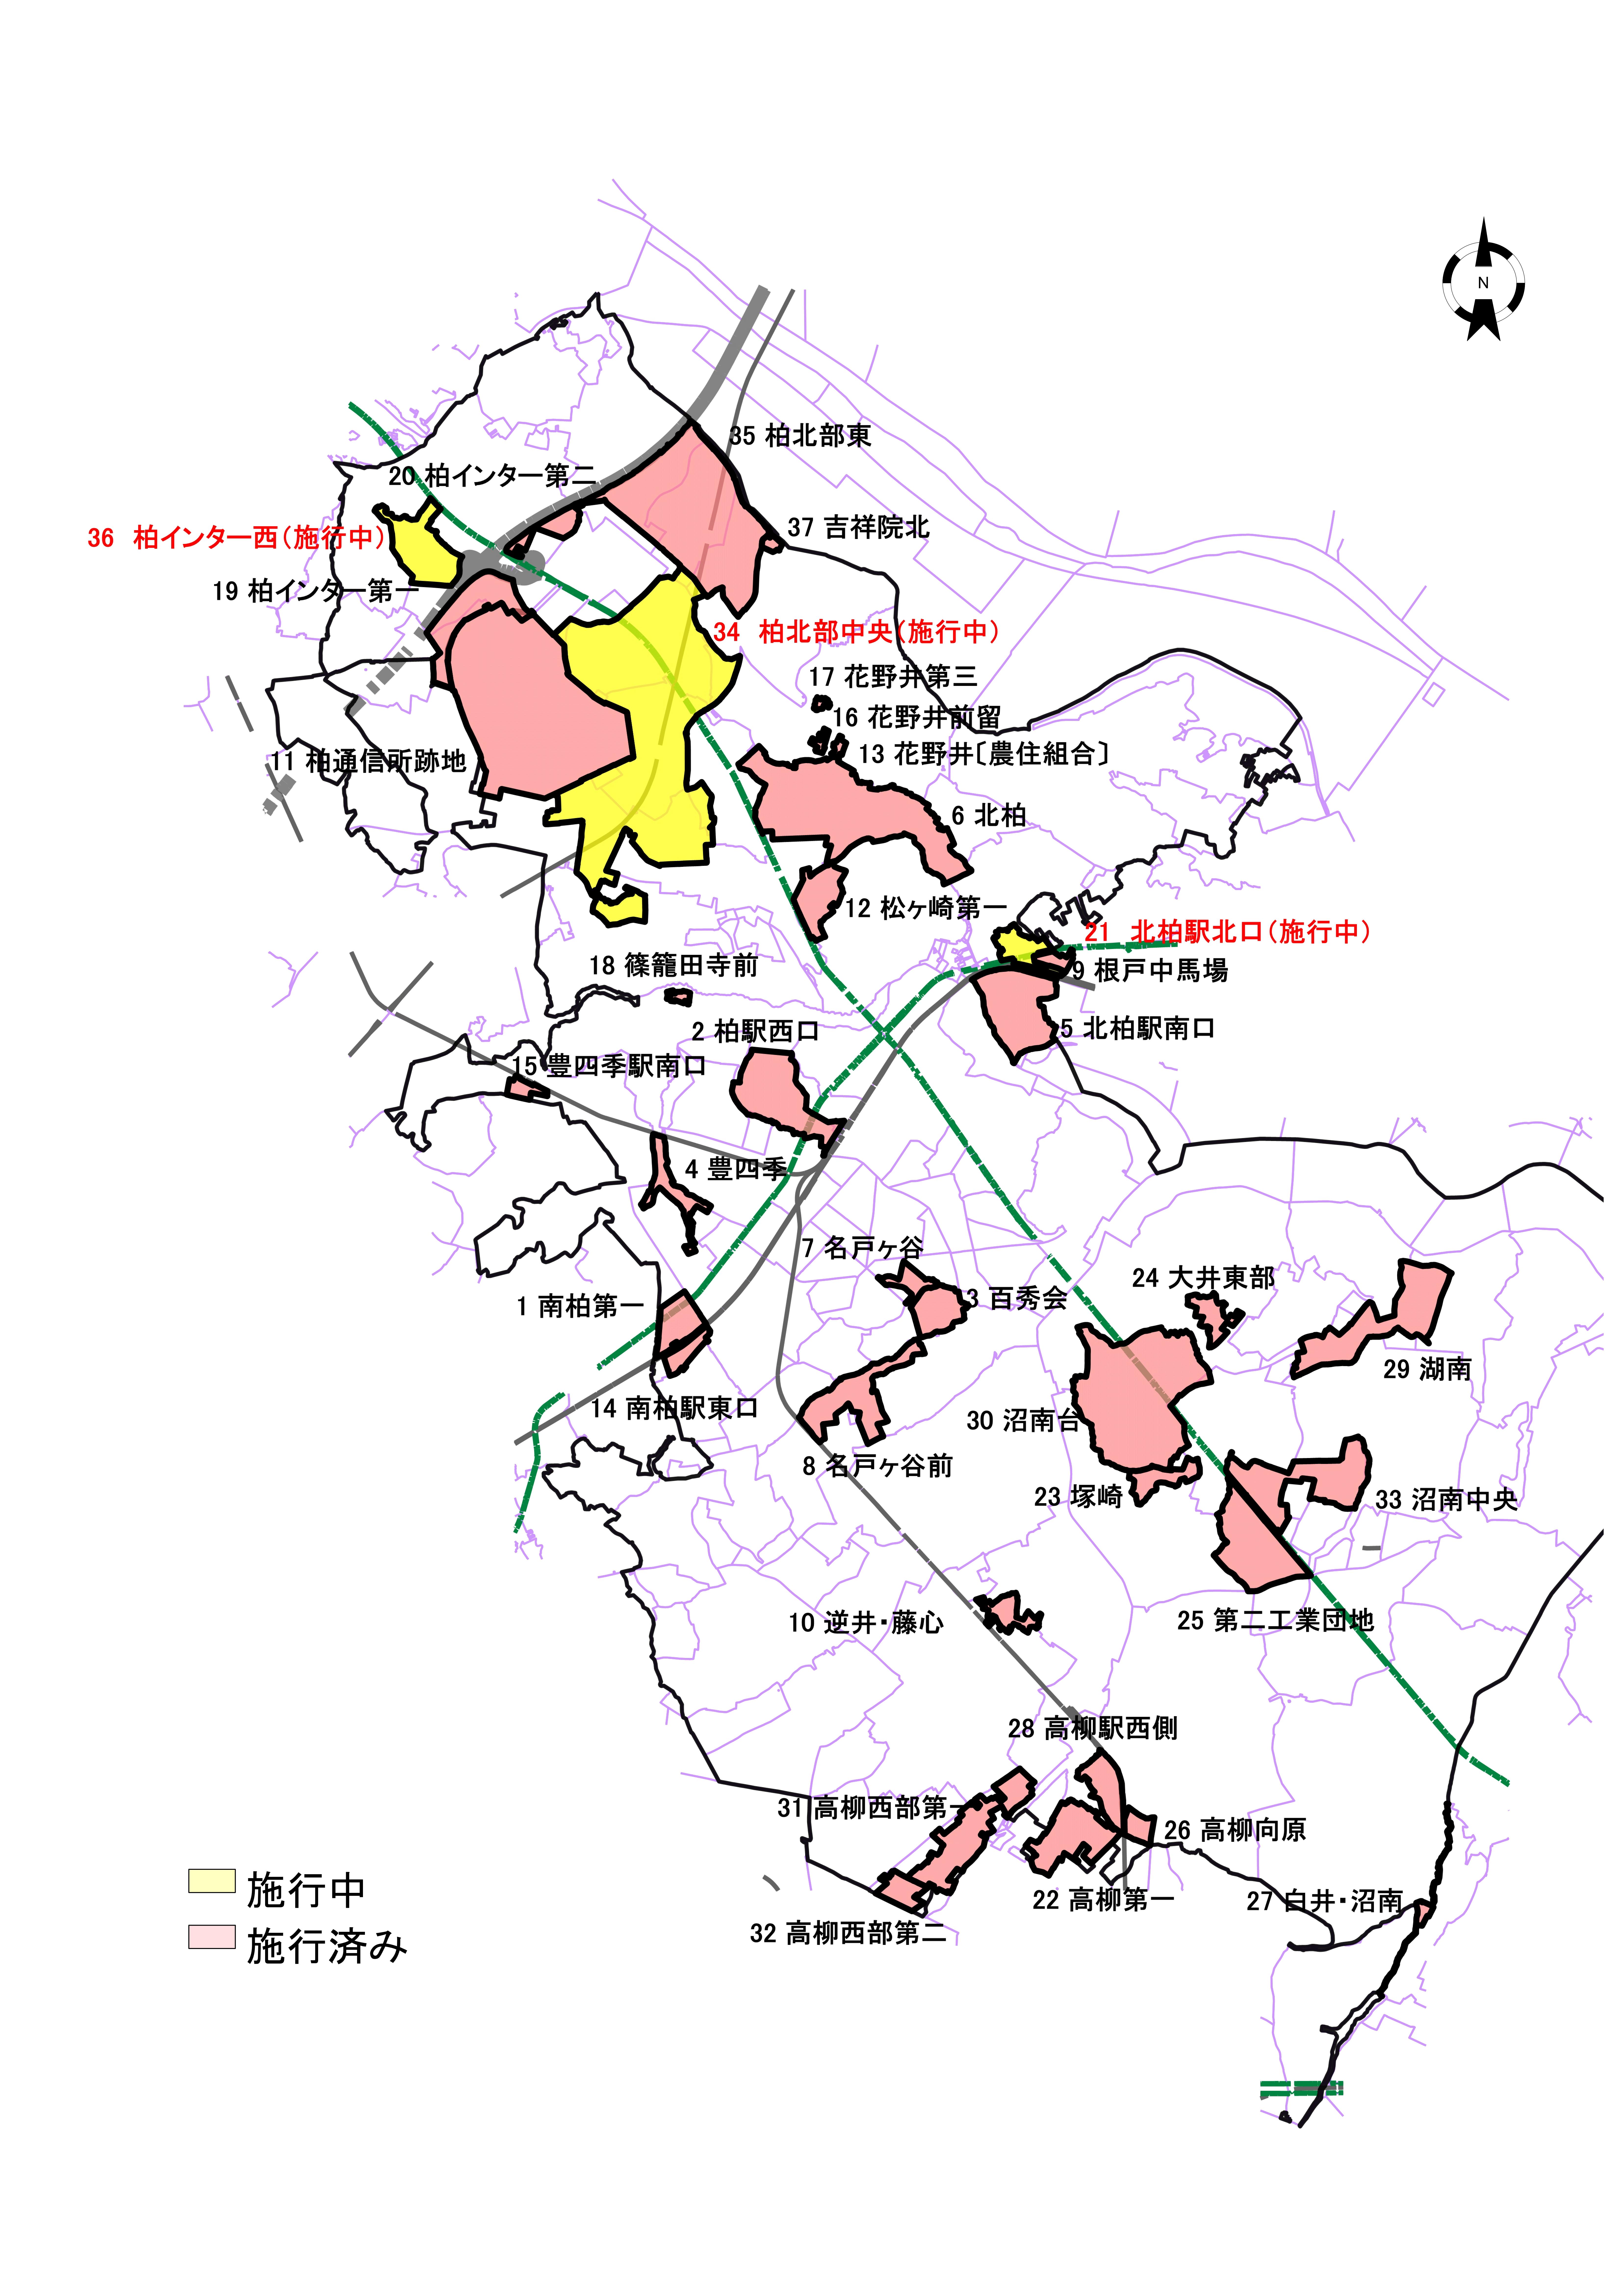 柏市内の土地区画整理事業位置図(R3.12)